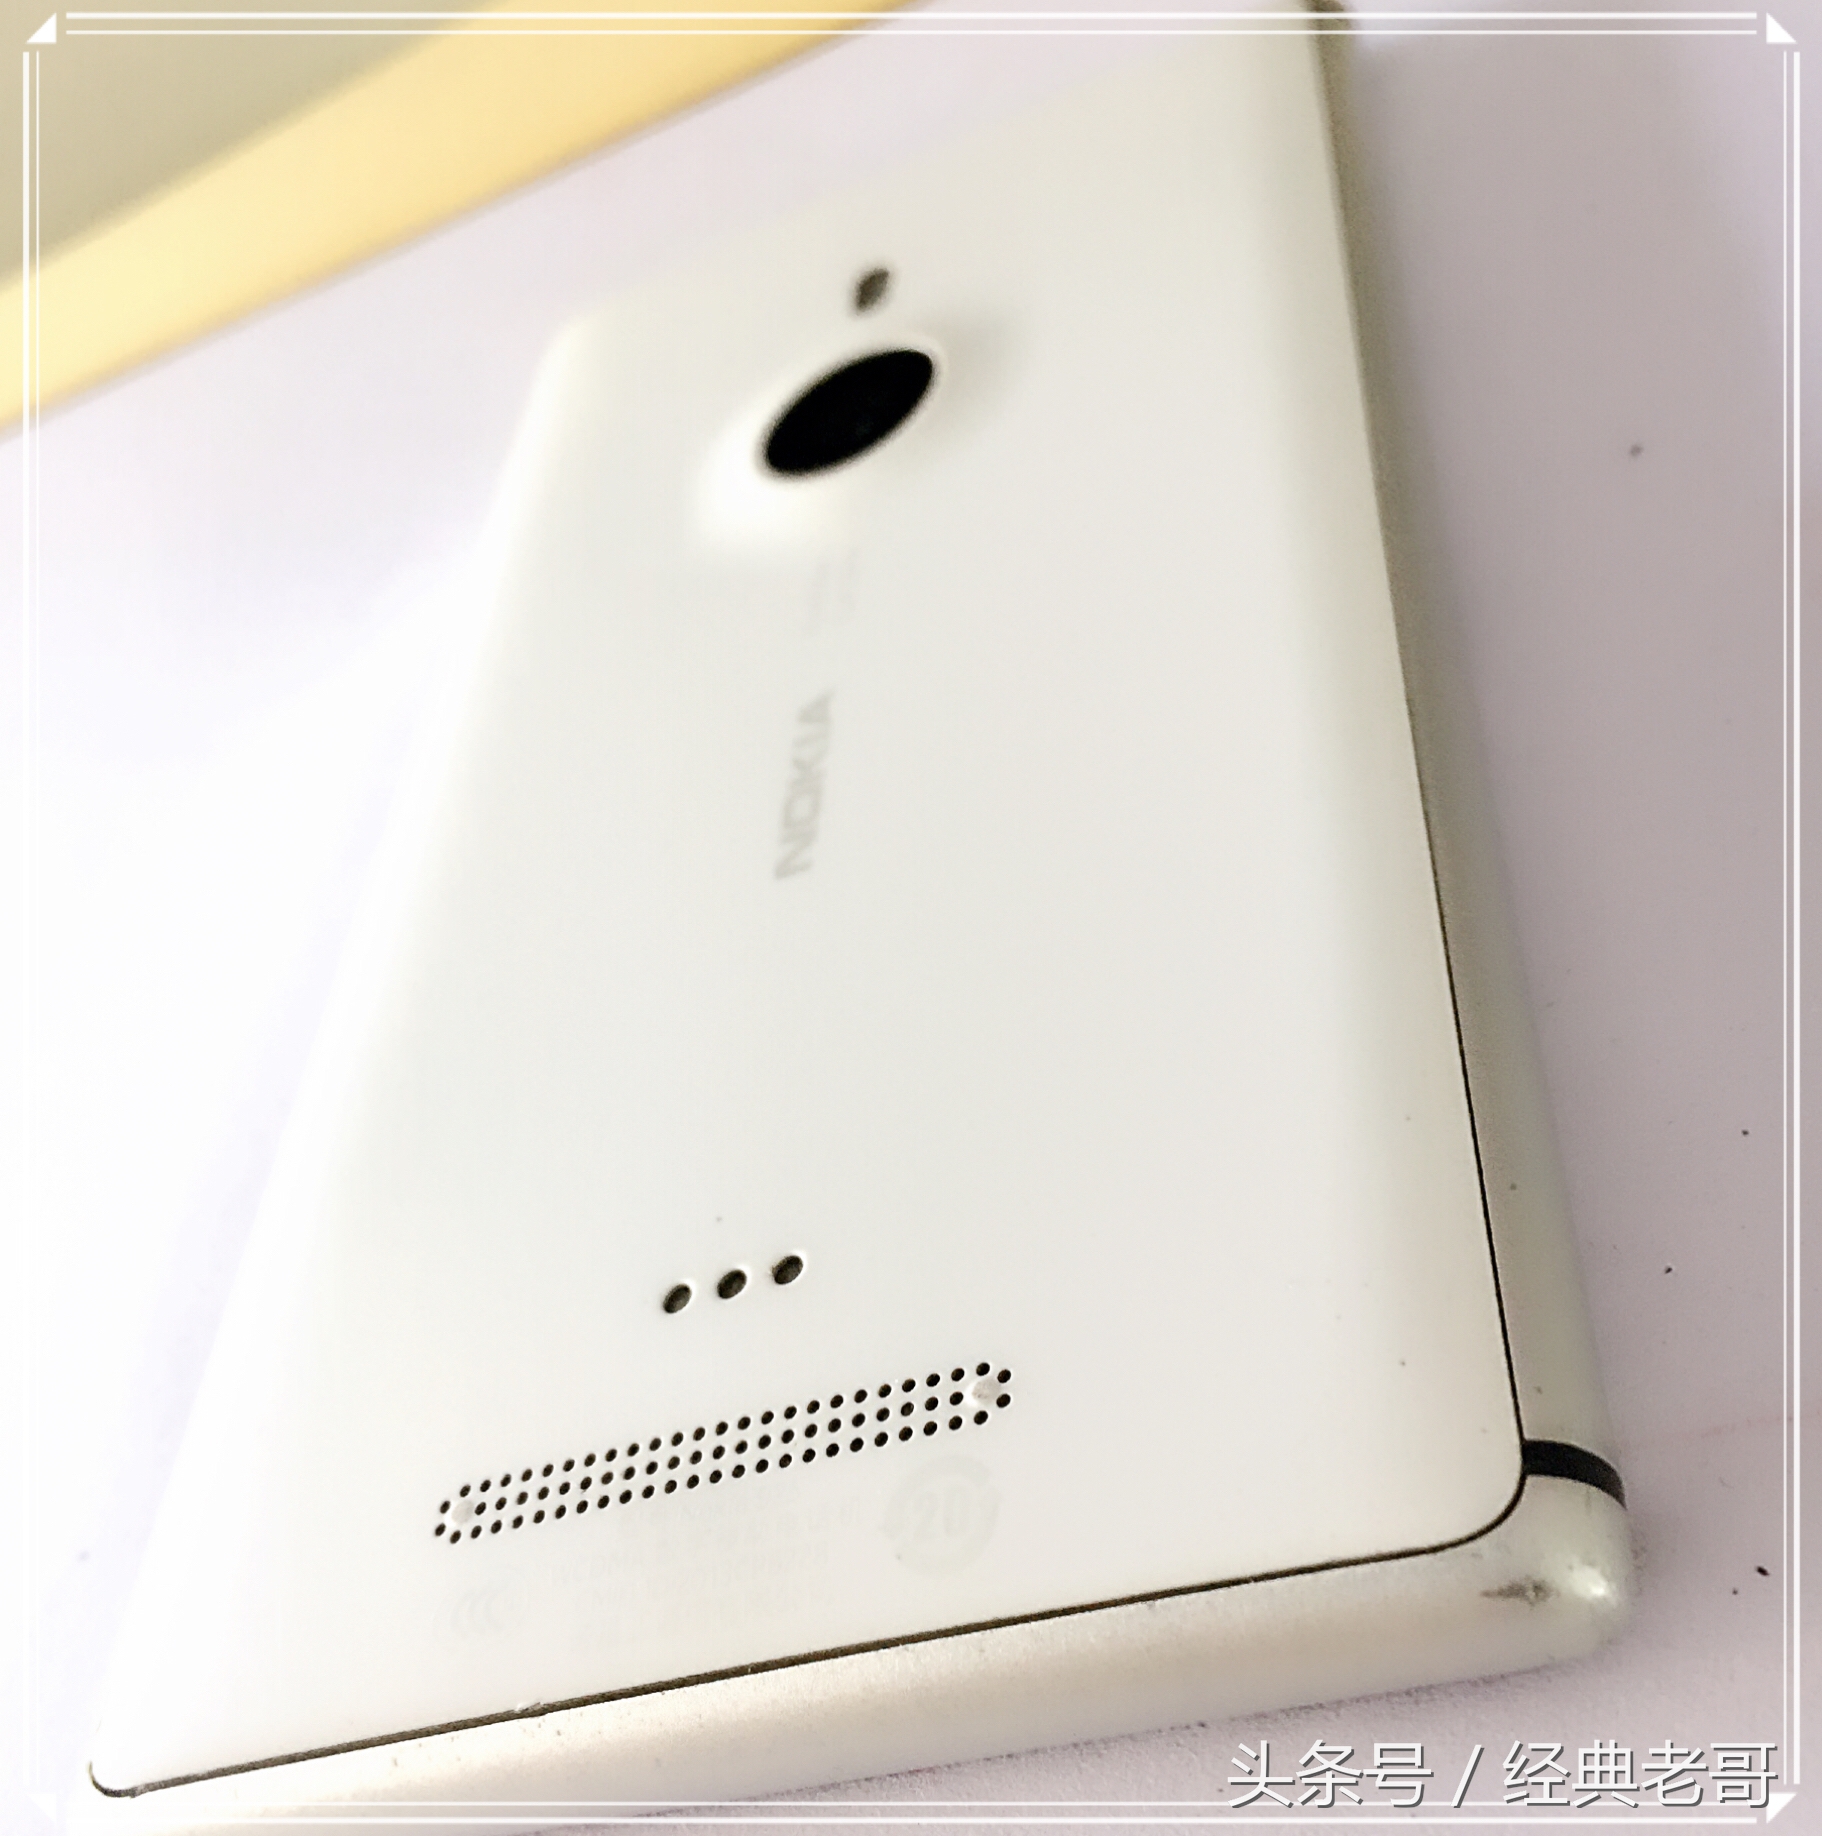 二手机新测评——150块淘来的情结lumia925